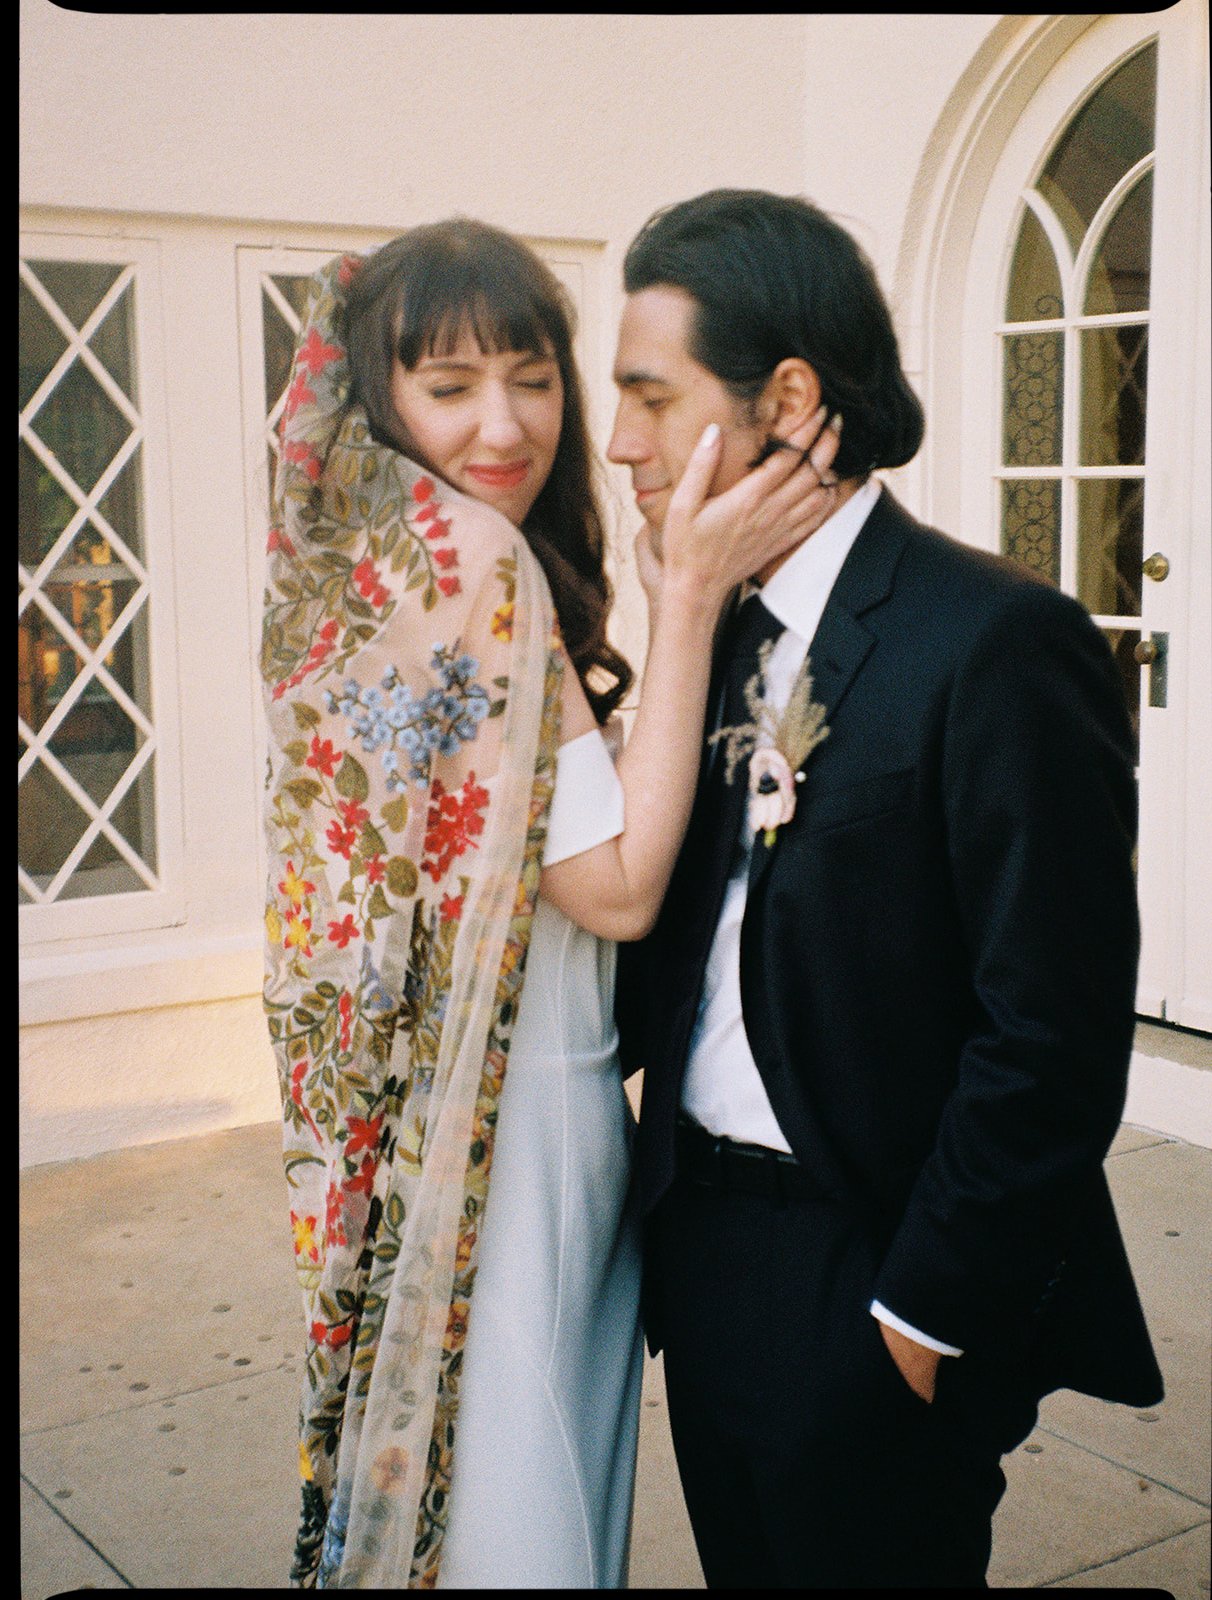 Best-Austin-Wedding-Photographers-Elopement-Film-35mm-Asheville-Santa-Barbara-Laguna-Gloria-64.jpg